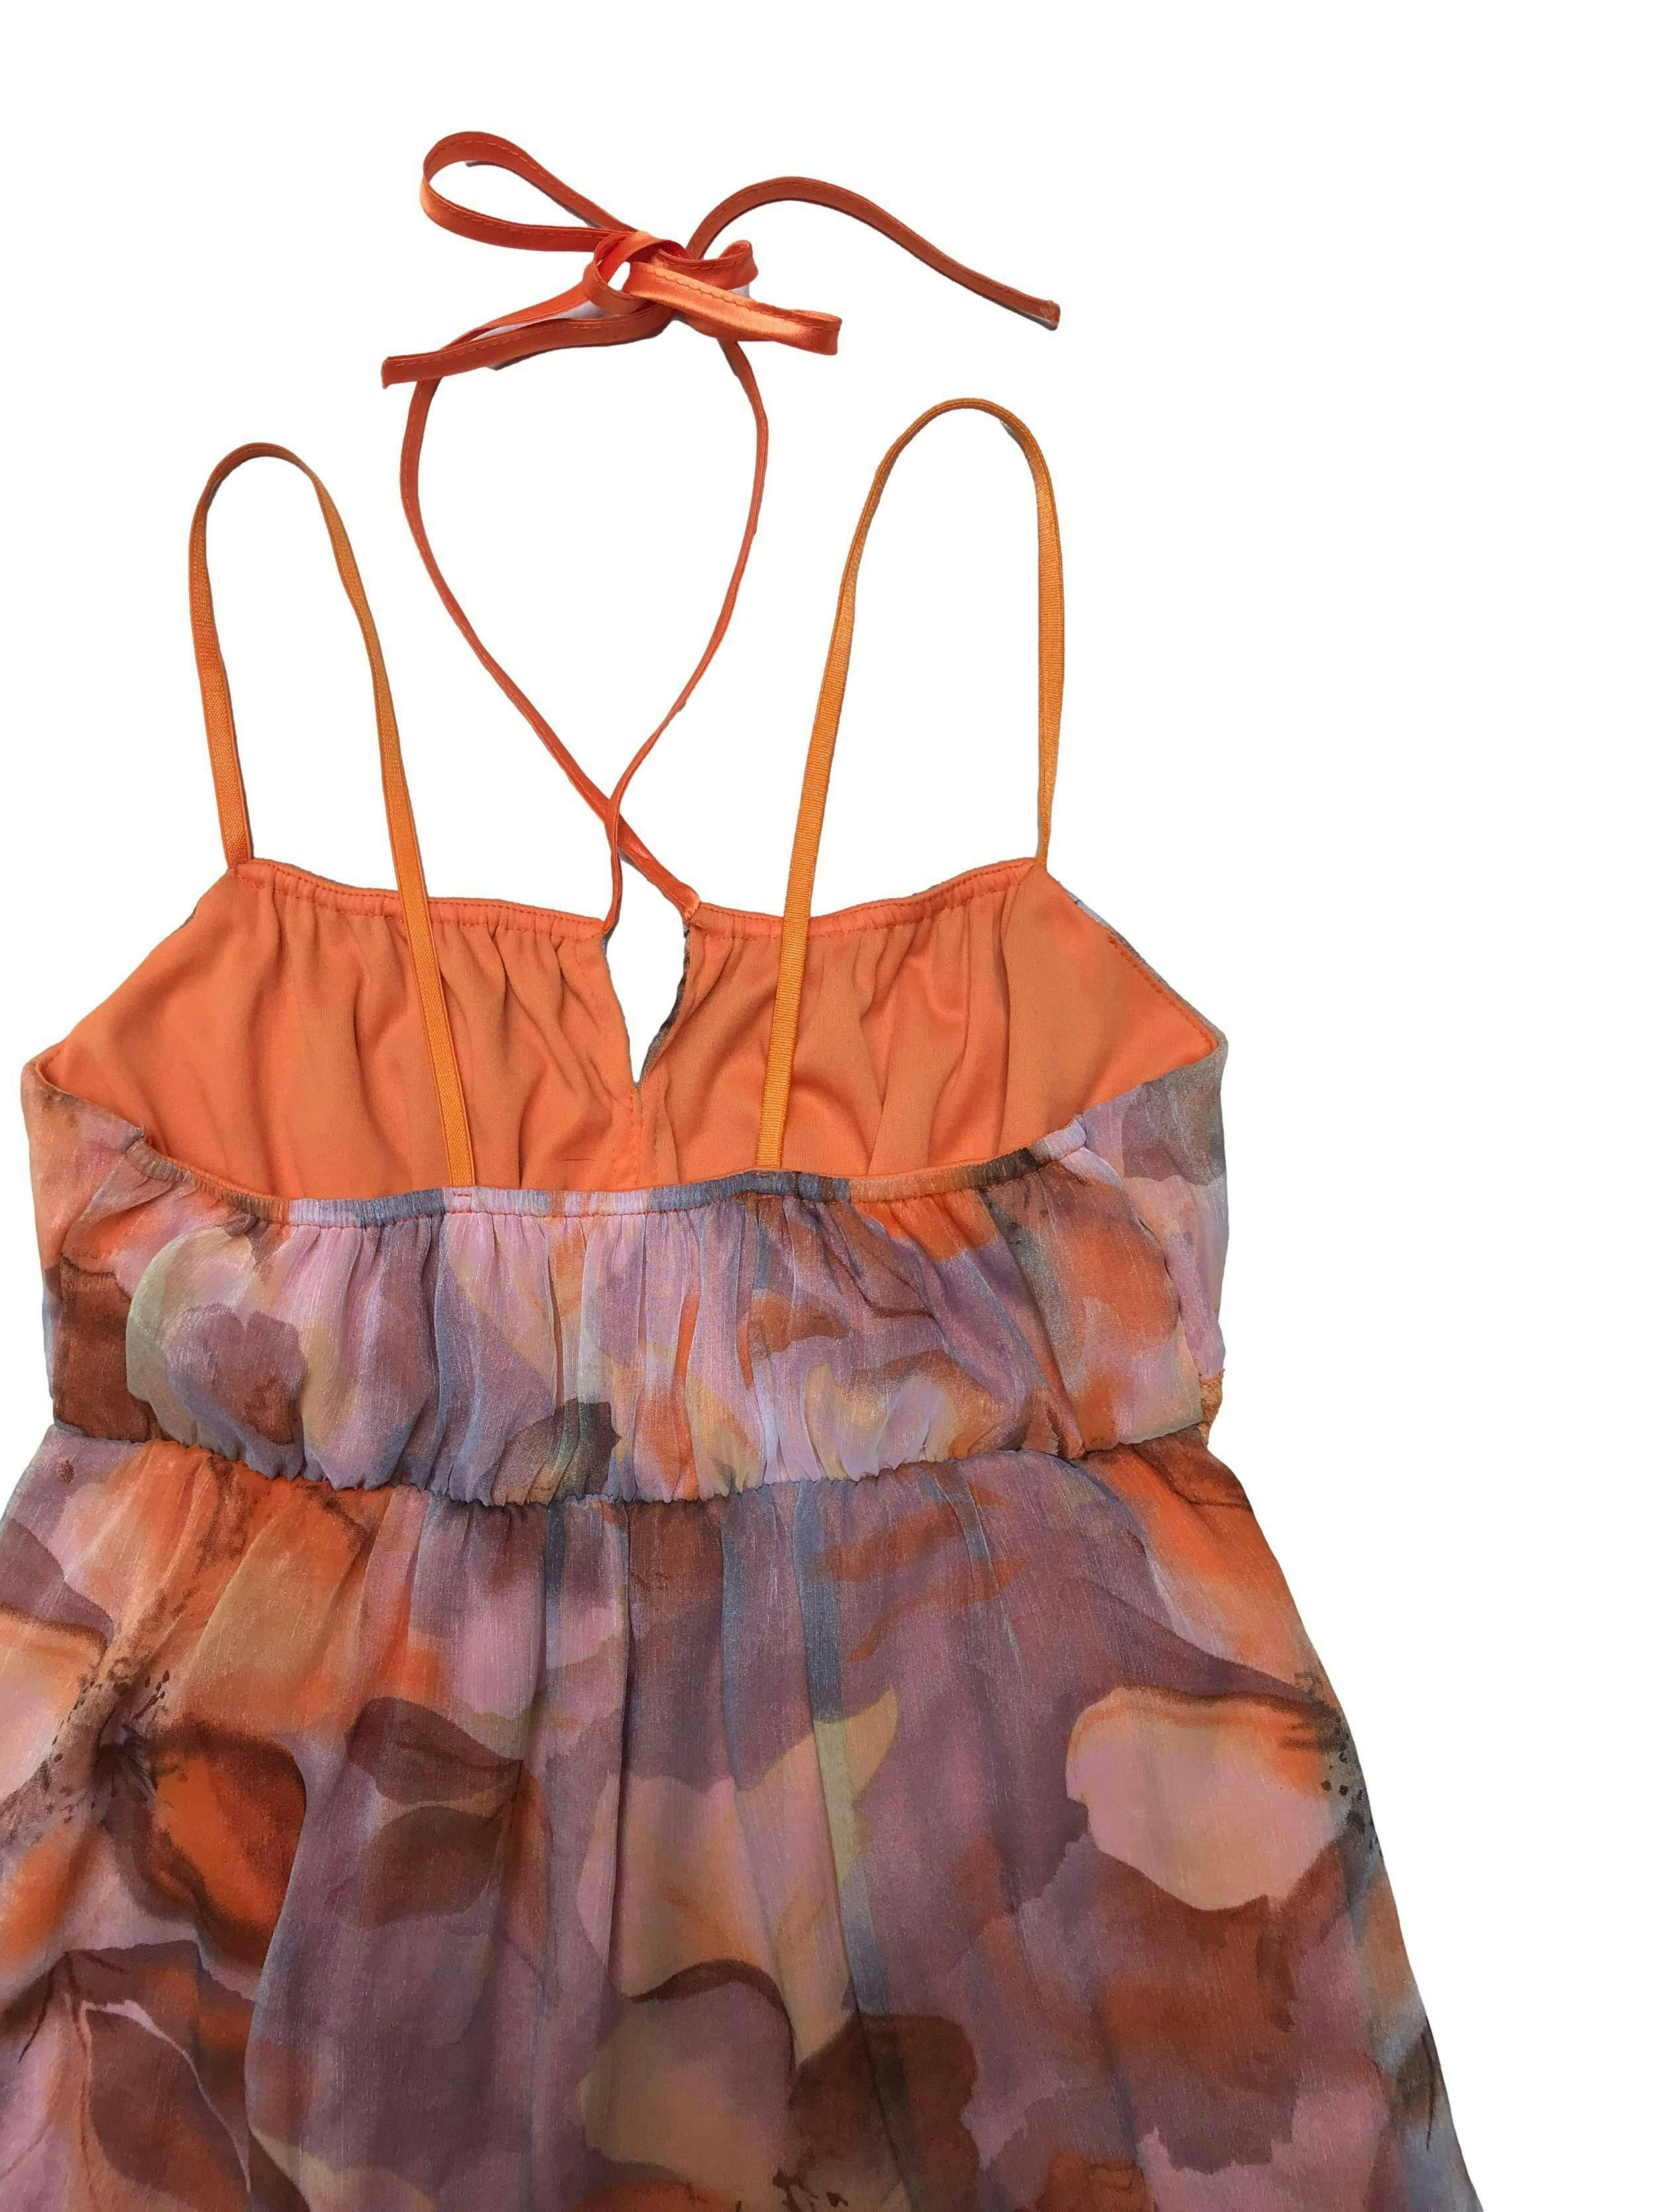 Vestido de gasa ploma con flores anaranjadas, tiritas elásticas y otra halter, encaje debajo del busto, elástico en la espalda y es forrado. Largo 85cm